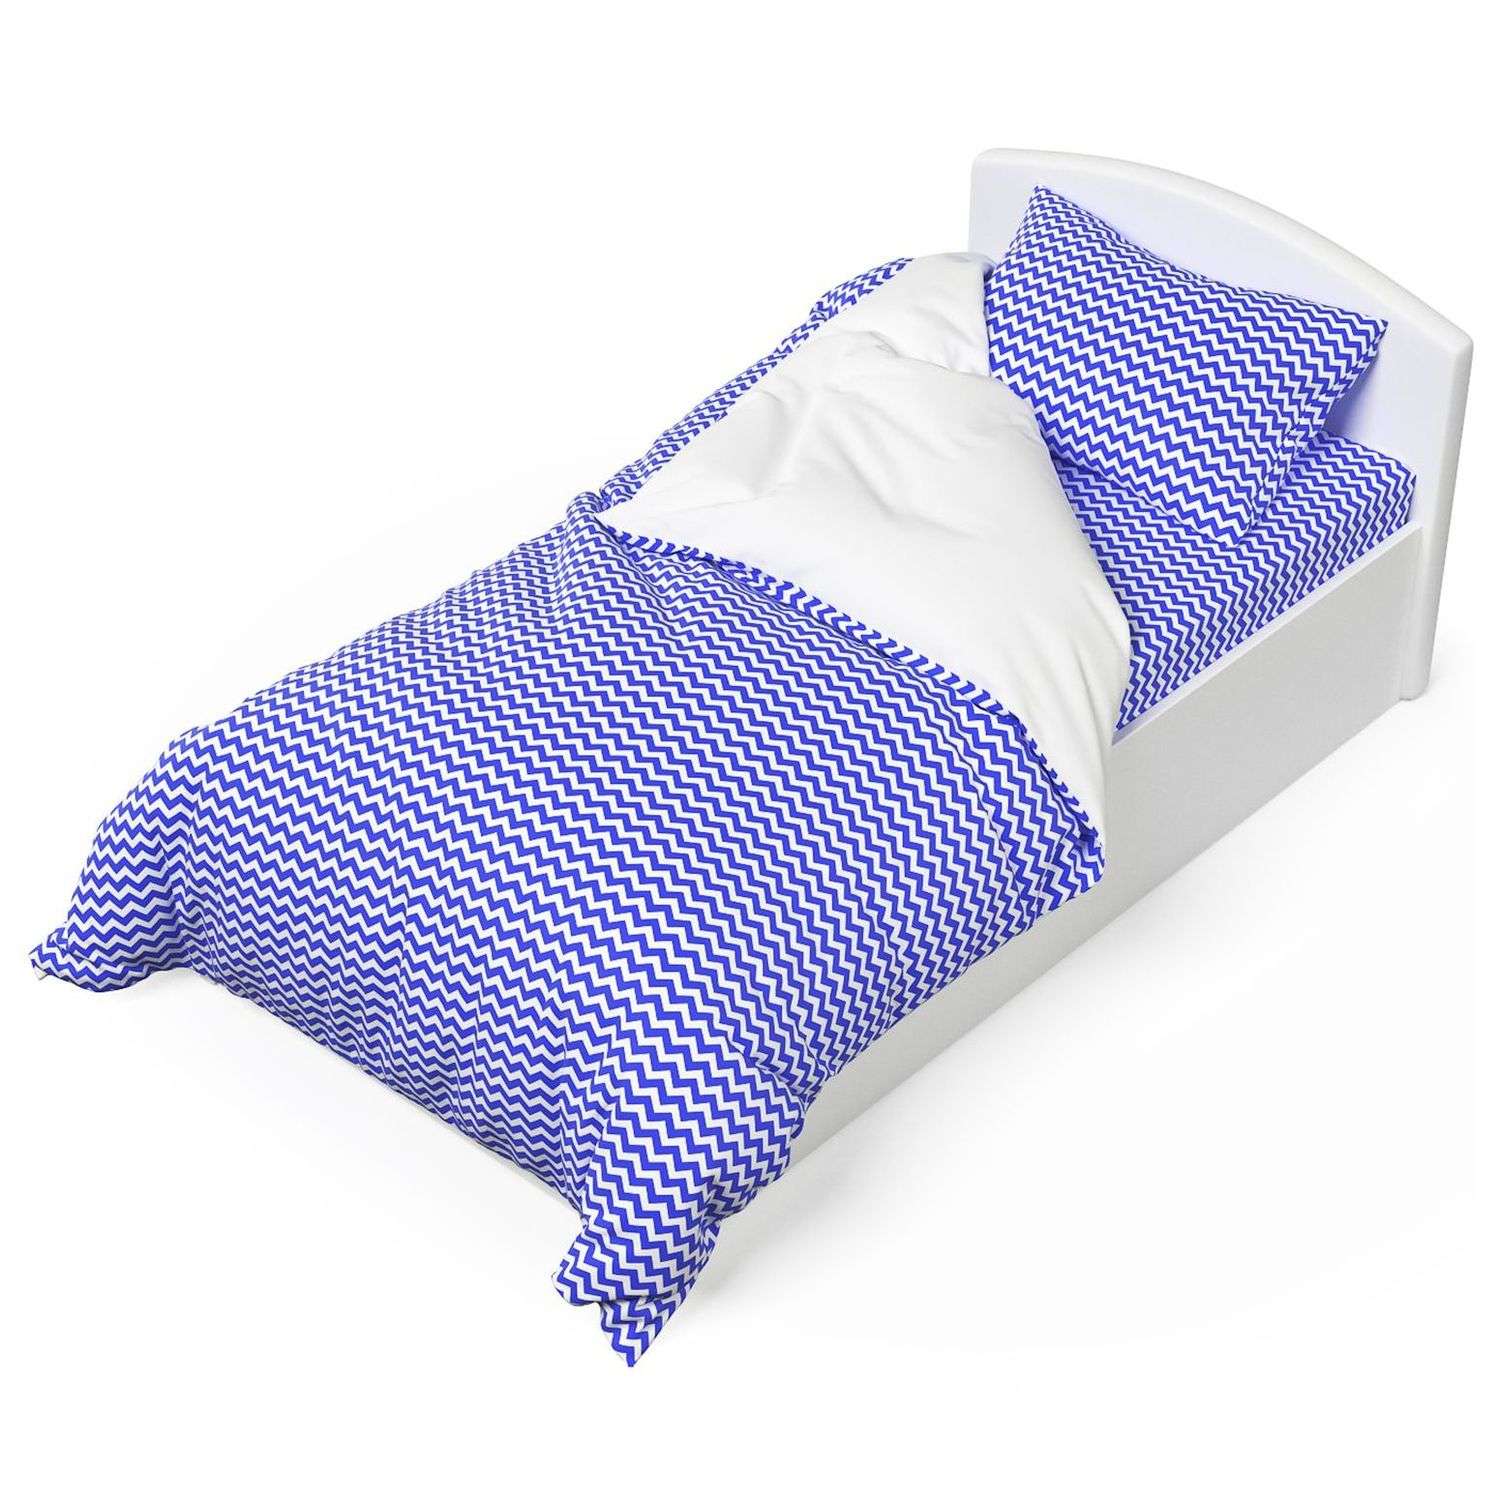 Комплект постельного белья Капризун Морская волна 1.5спальный 3предмета - фото 1